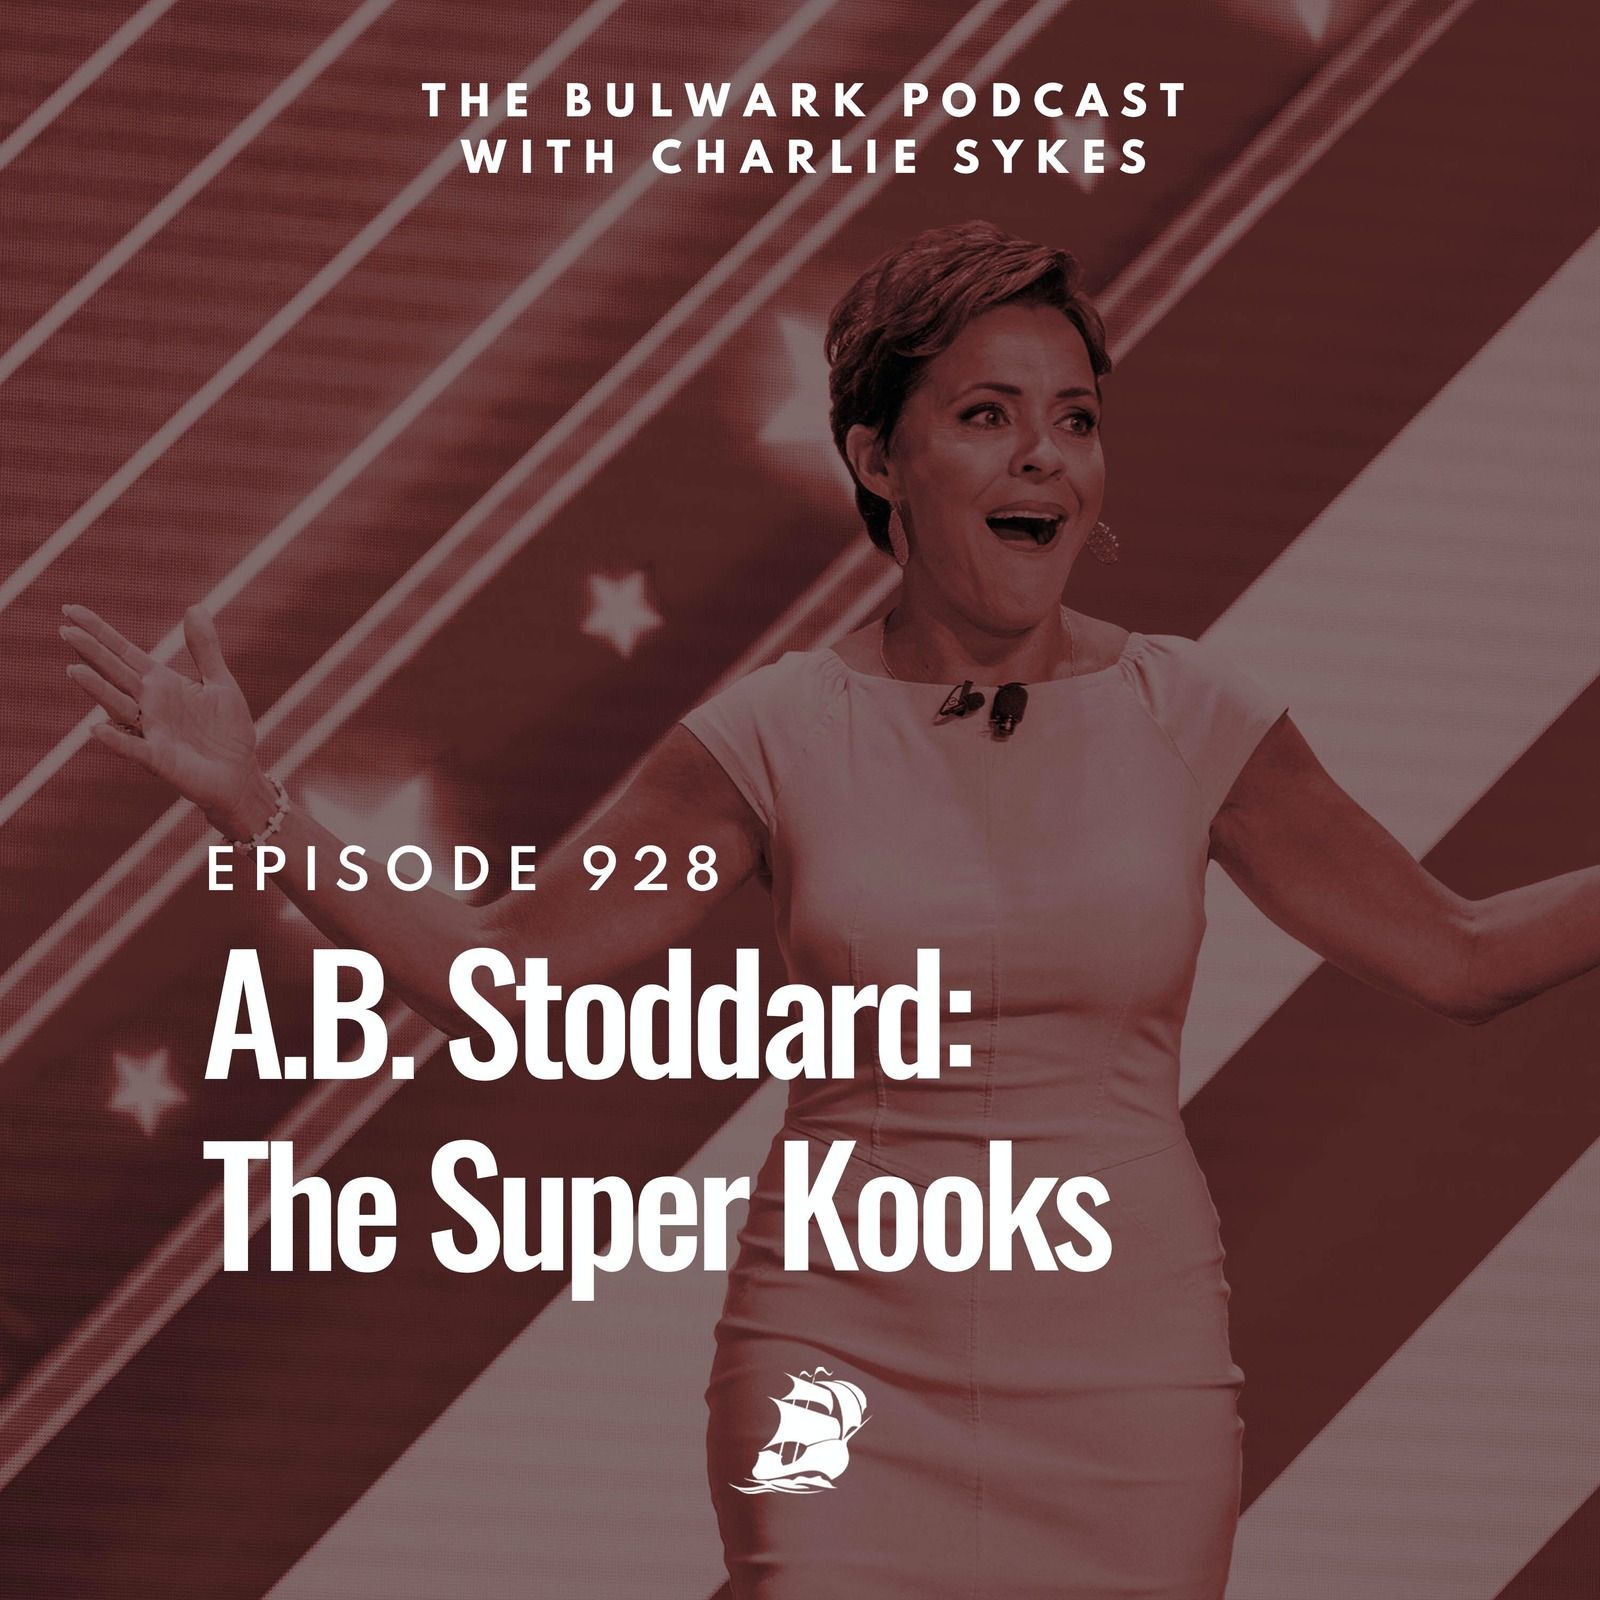 A.B. Stoddard: The Super Kooks